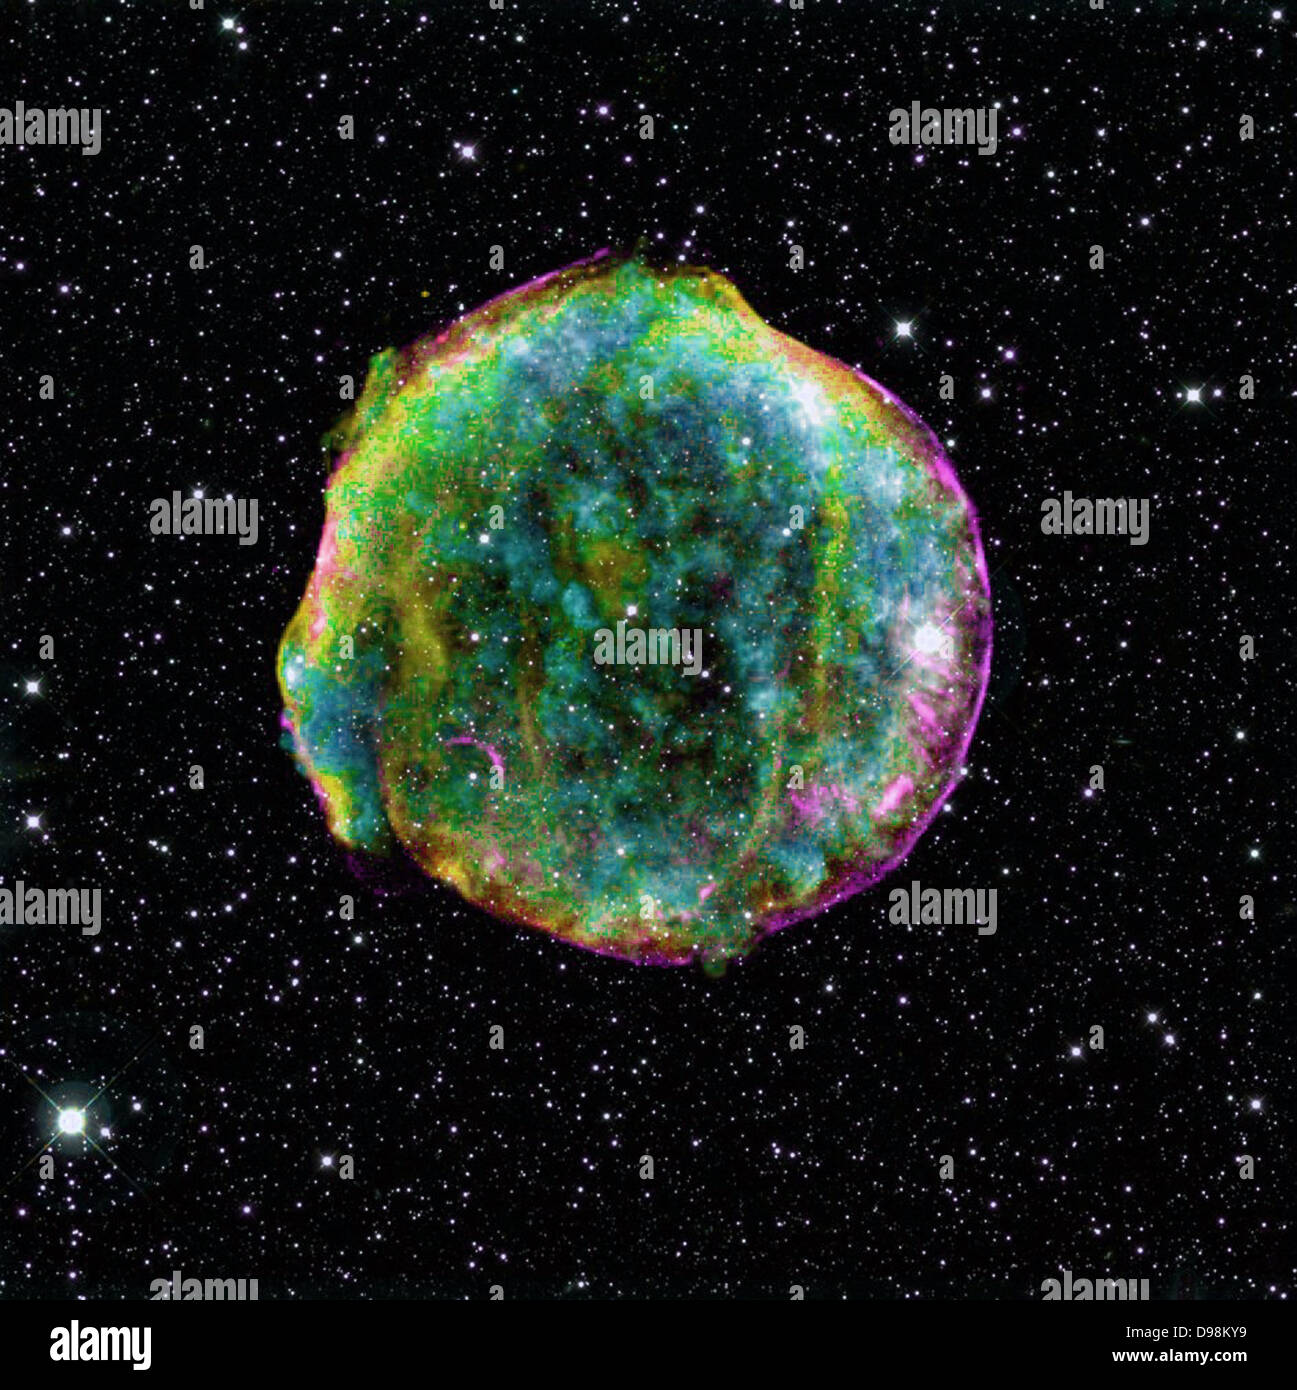 zusammengesetztes Bild von Tycho-Supernova-Überrest verbindet, Infrarot- und Röntgenbeobachtungen mit NASA Spitzer erhalten und Stockfoto